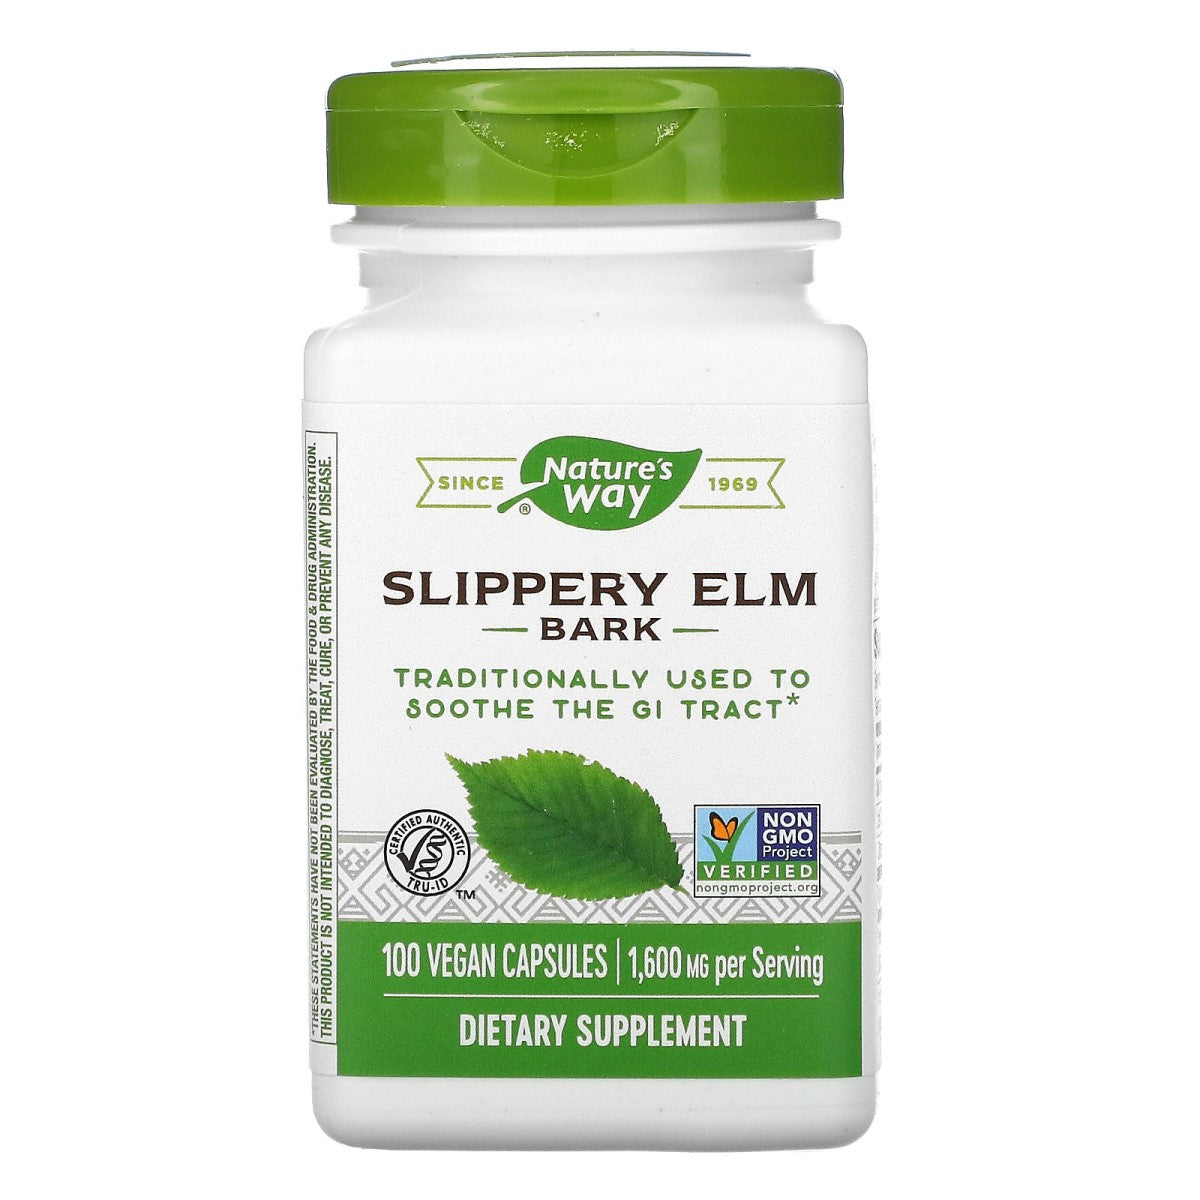 Primary image of Slippery Elm Bark